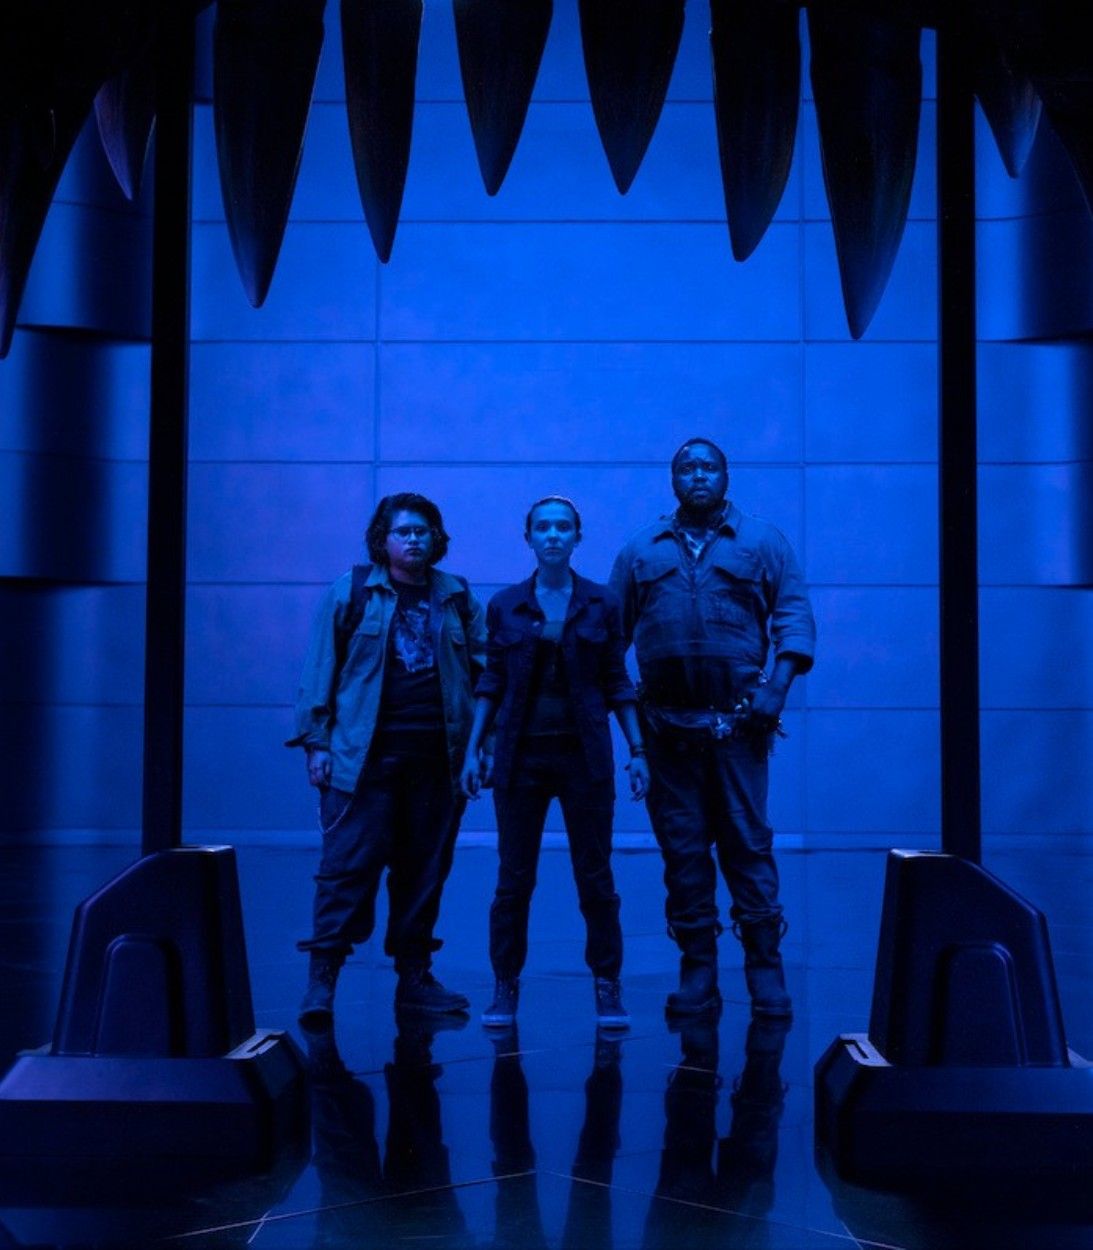 'Breaking The Law' от Judas Priest играет во время кадра с Джошем, который увозит Мэдисон в своём фургоне.